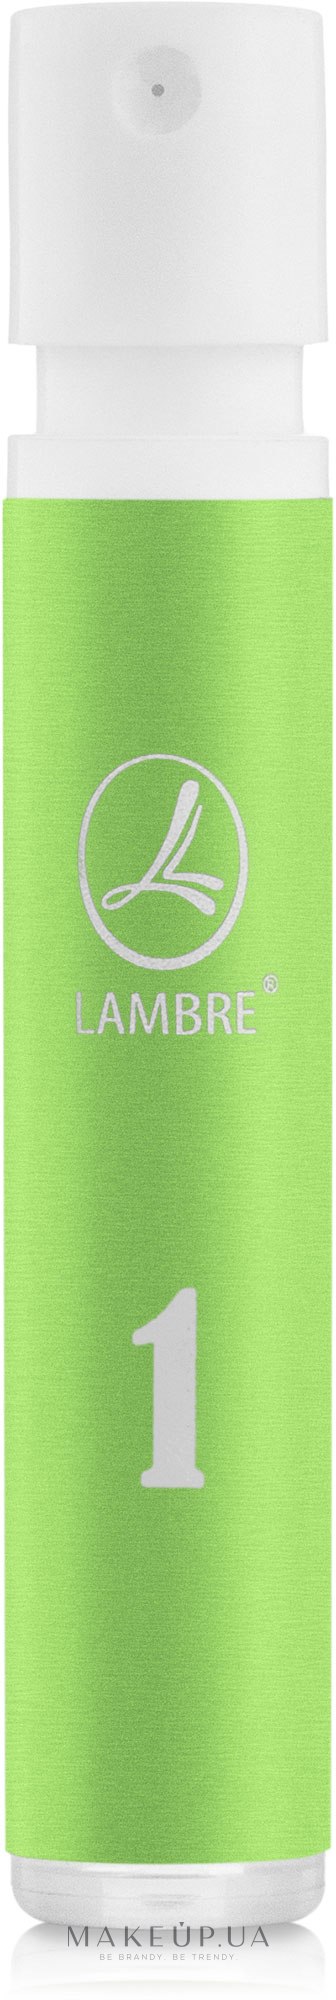 Lambre № 1 - Духи (пробник) — фото 1.2ml